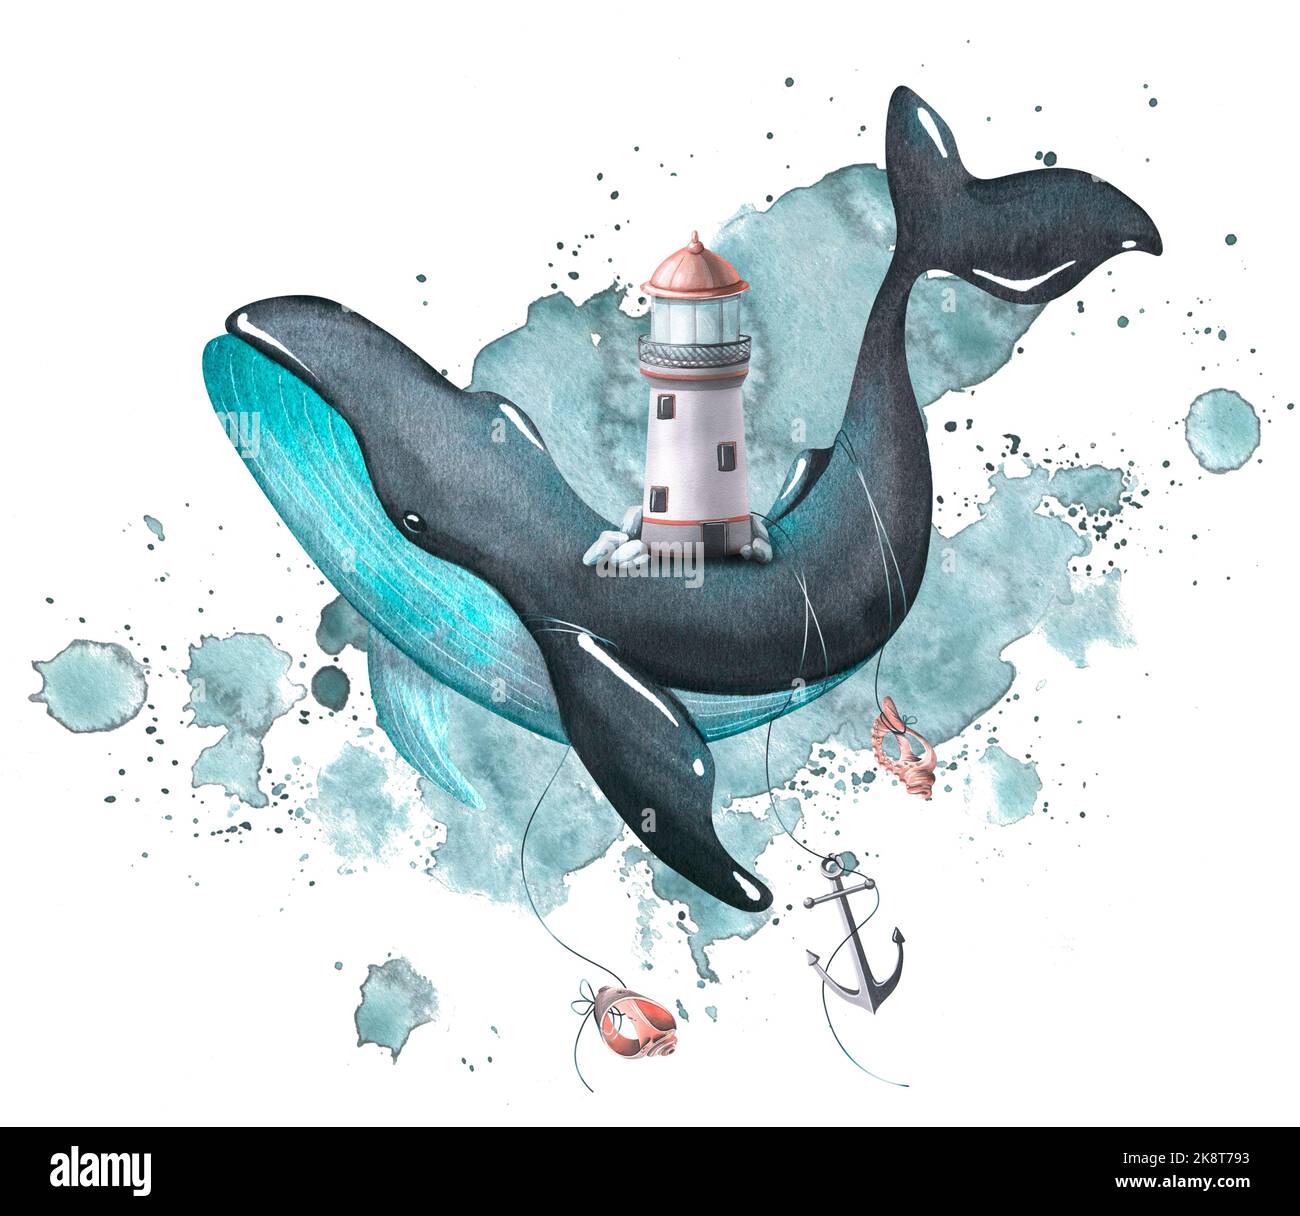 Une baleine noire et turquoise avec un phare à l'arrière, avec une ancre et des coquillages sur le fond d'une tache d'aquarelle. Illustration aquarelle Banque D'Images